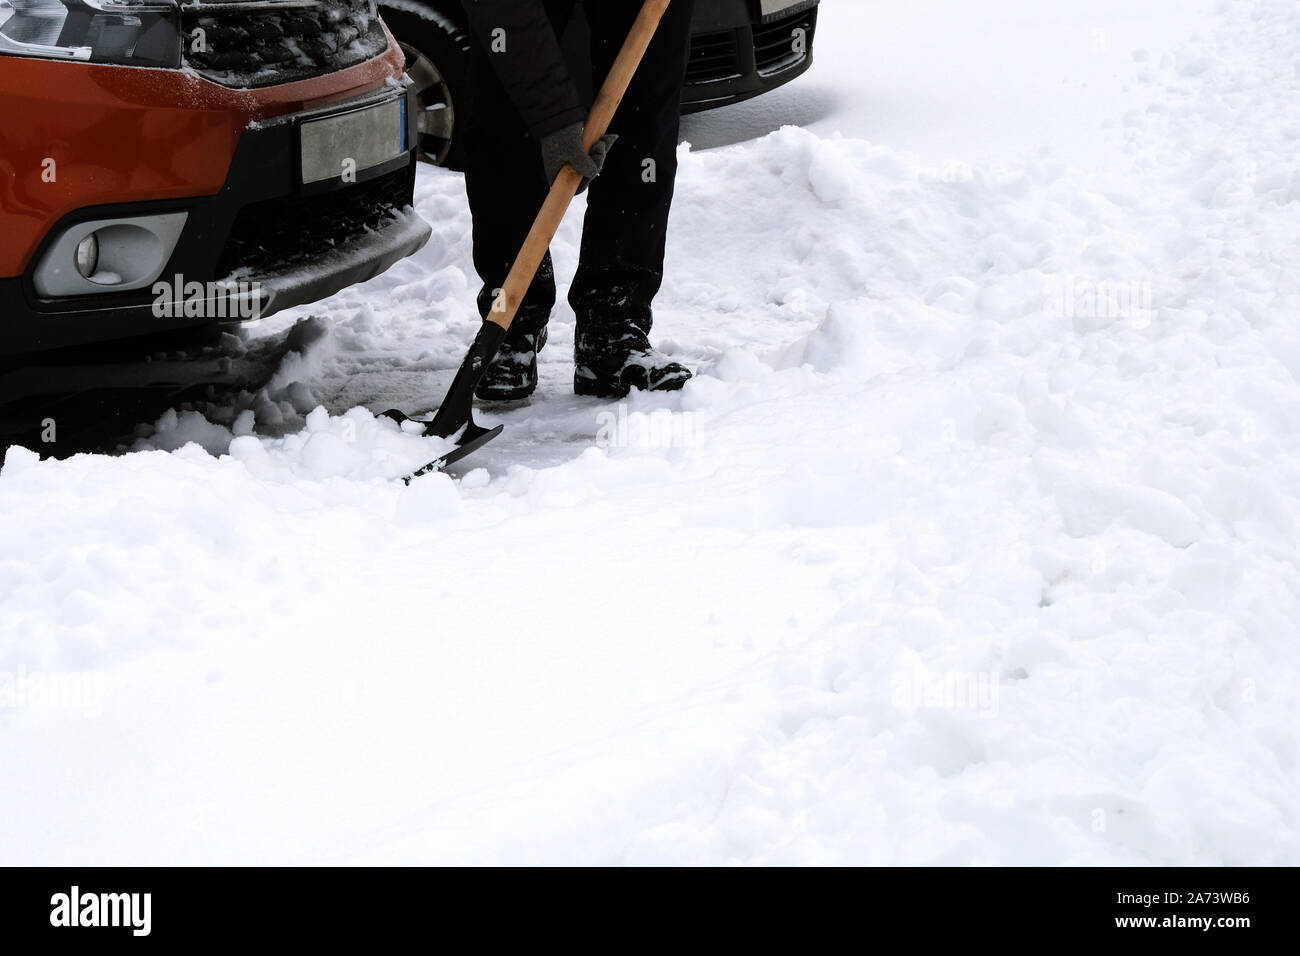 Mann reinigt sein Auto mit einer Schaufel vom Schnee. Auto mit Schnee  bedeckt. Schneesturm im Winter. verschneite Straßen. Schneeräumung. flache  vektorillustration 13976255 Vektor Kunst bei Vecteezy